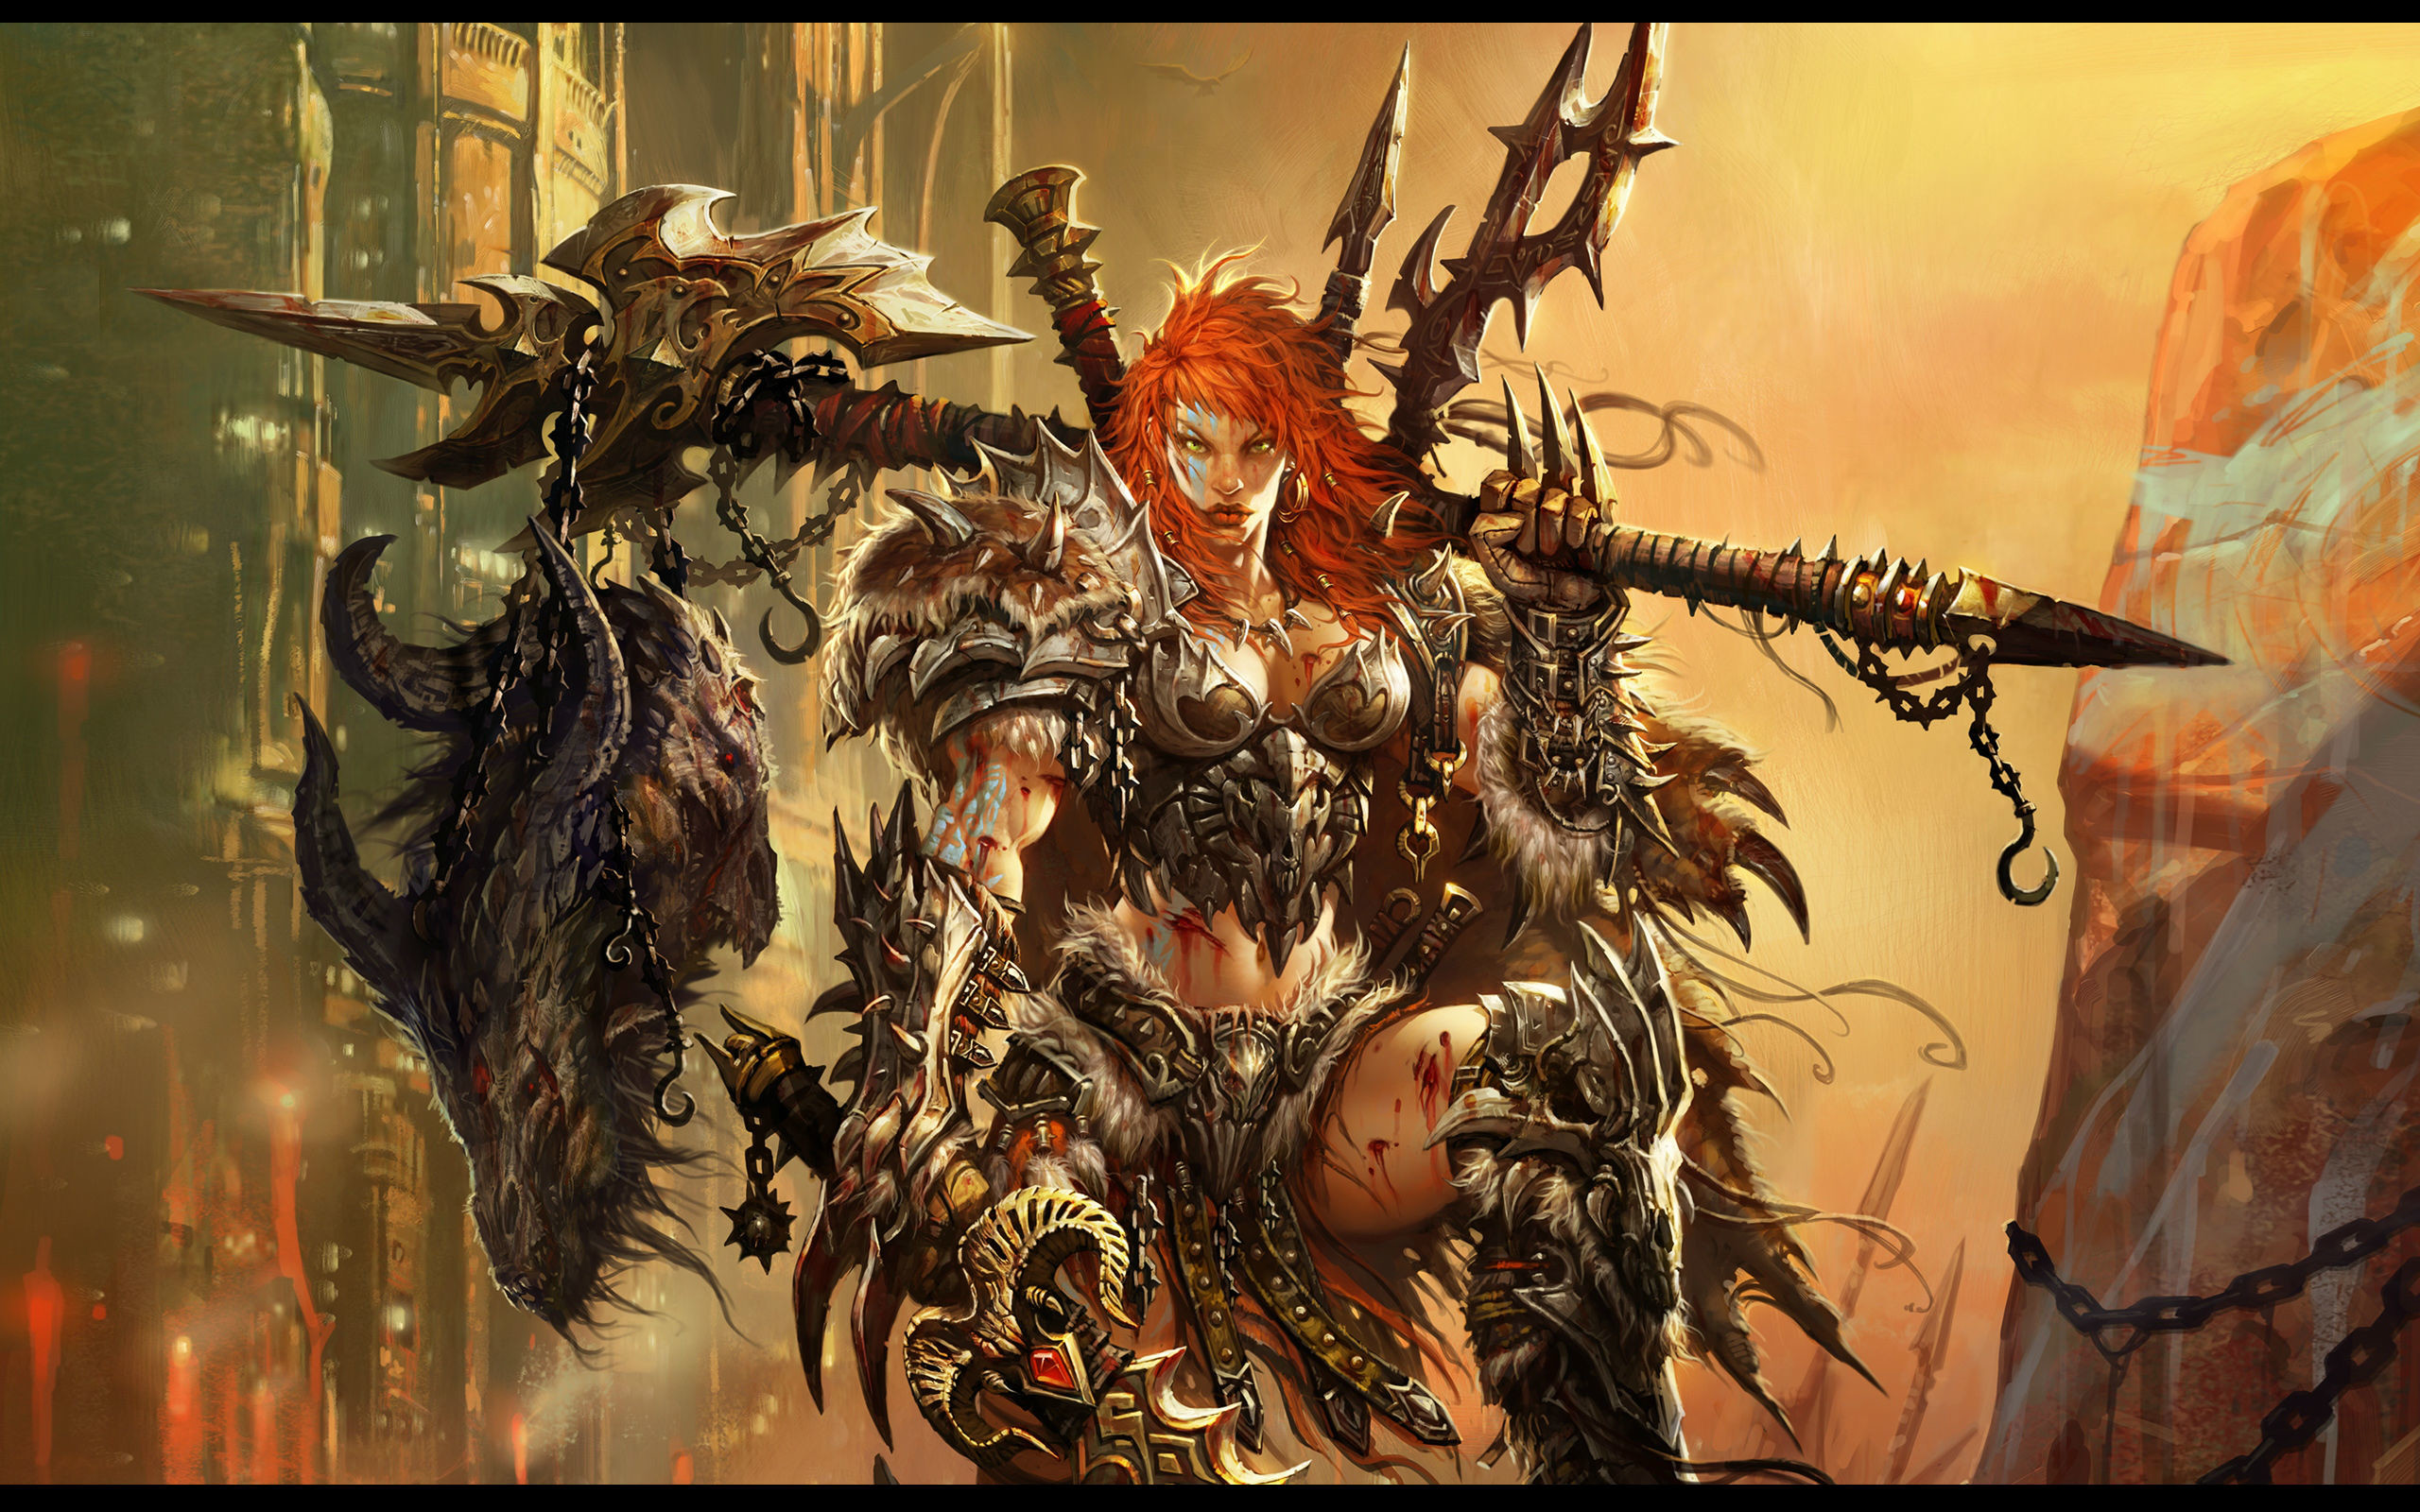 2560x1600 Diablo III HD Wallpaper | Background Image |  | ID:304036 -  Wallpaper Abyss